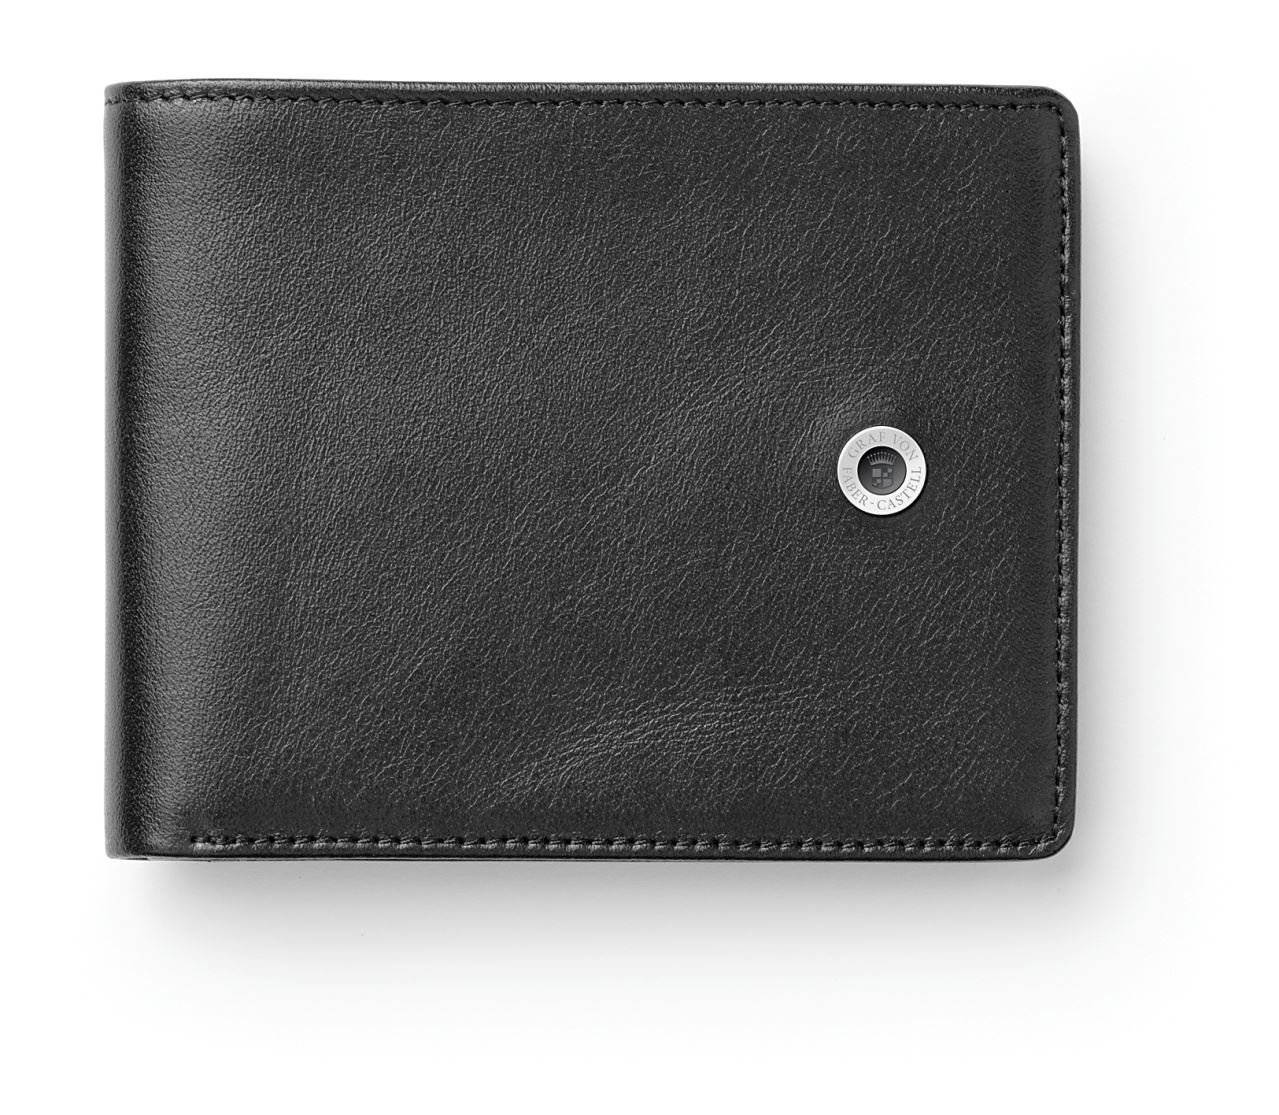 Graf-von-Faber-Castell - Credit card case, black smooth